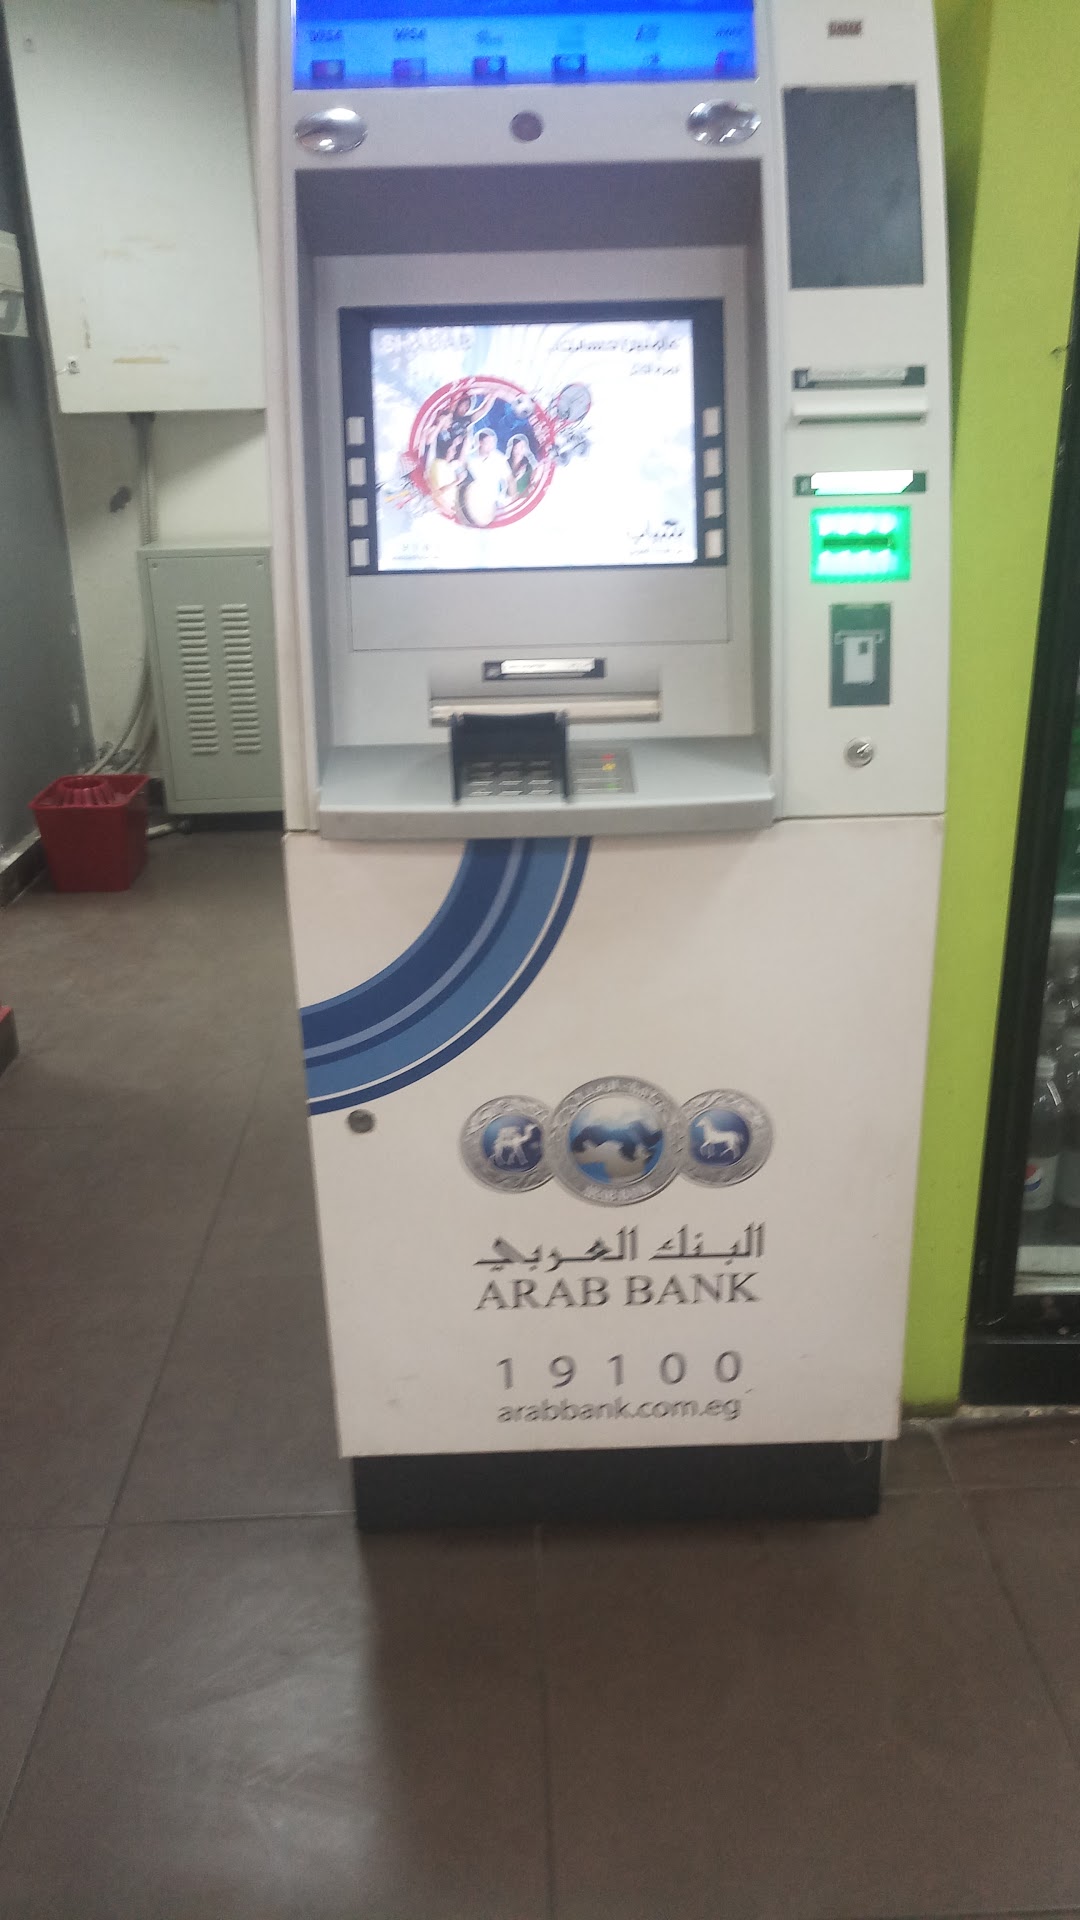 Arabi Bank ATM